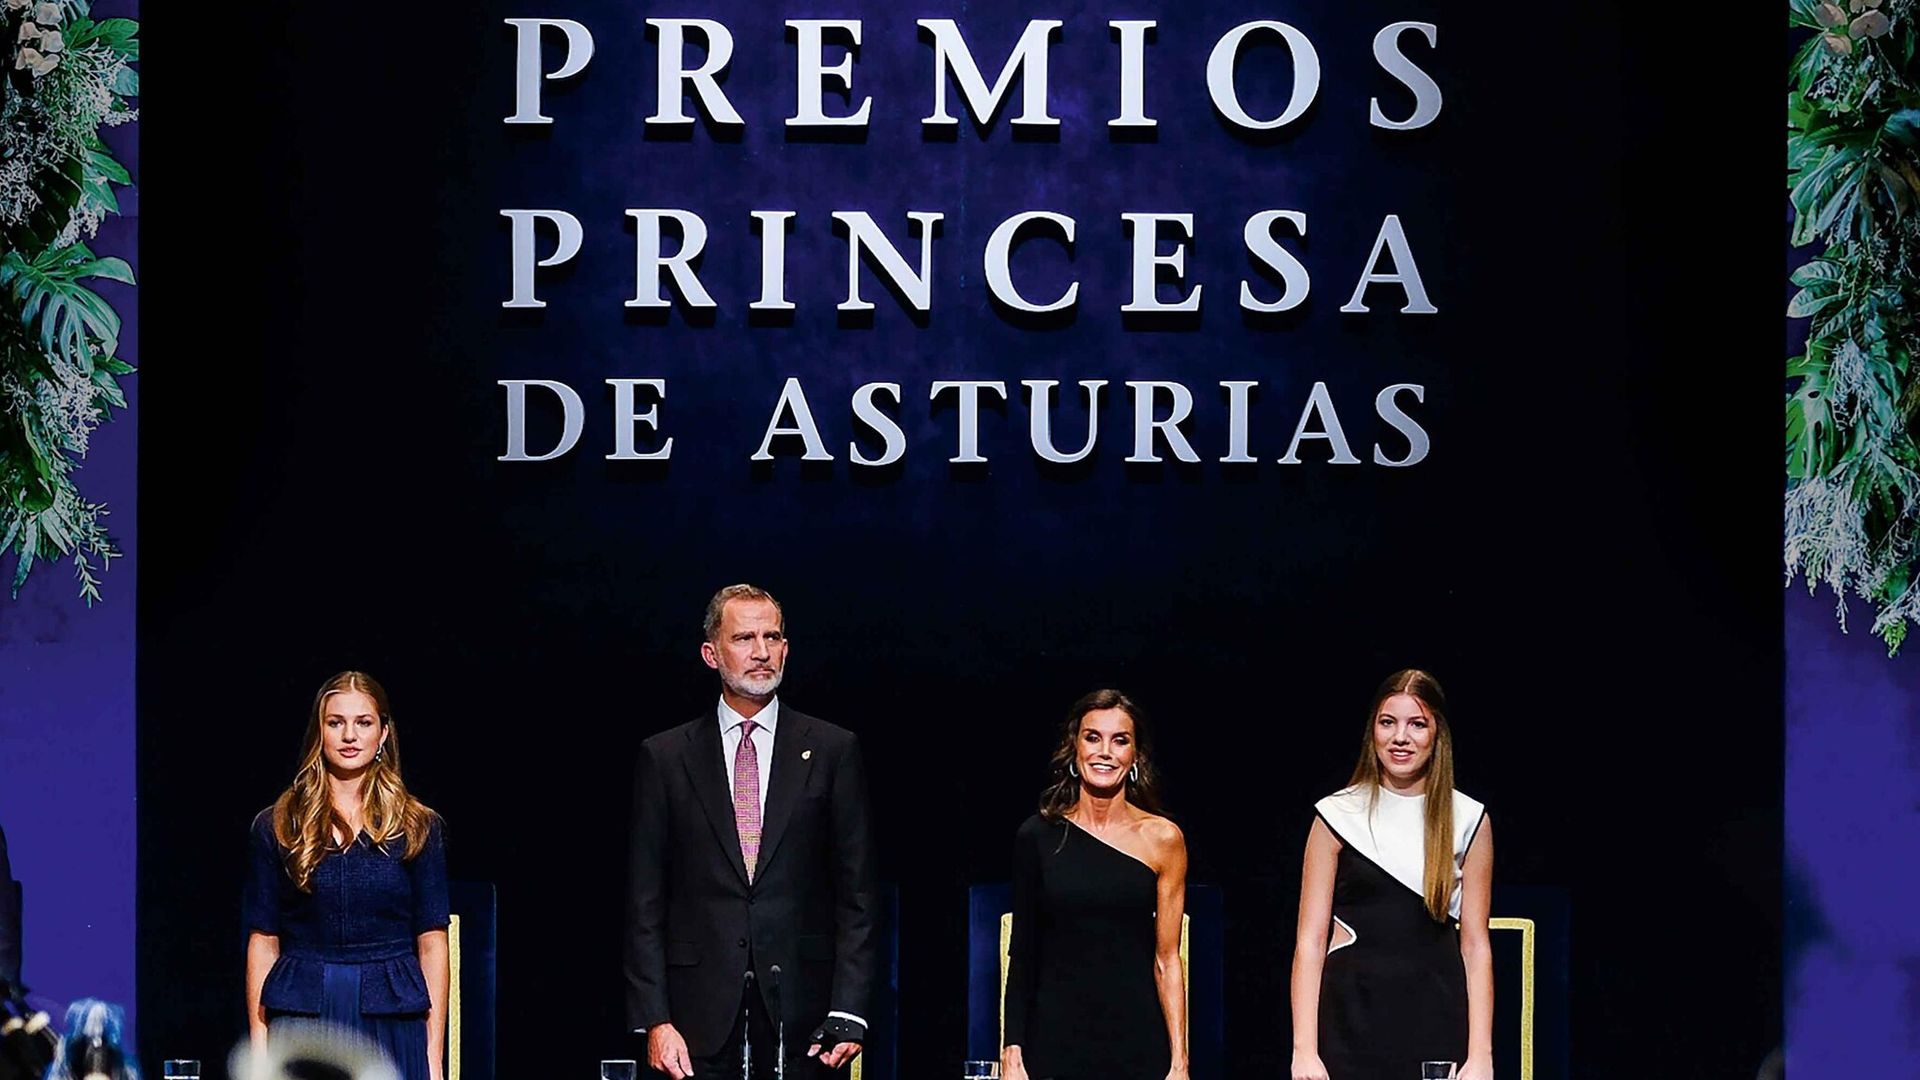 hola 4135 premios princesa asturias